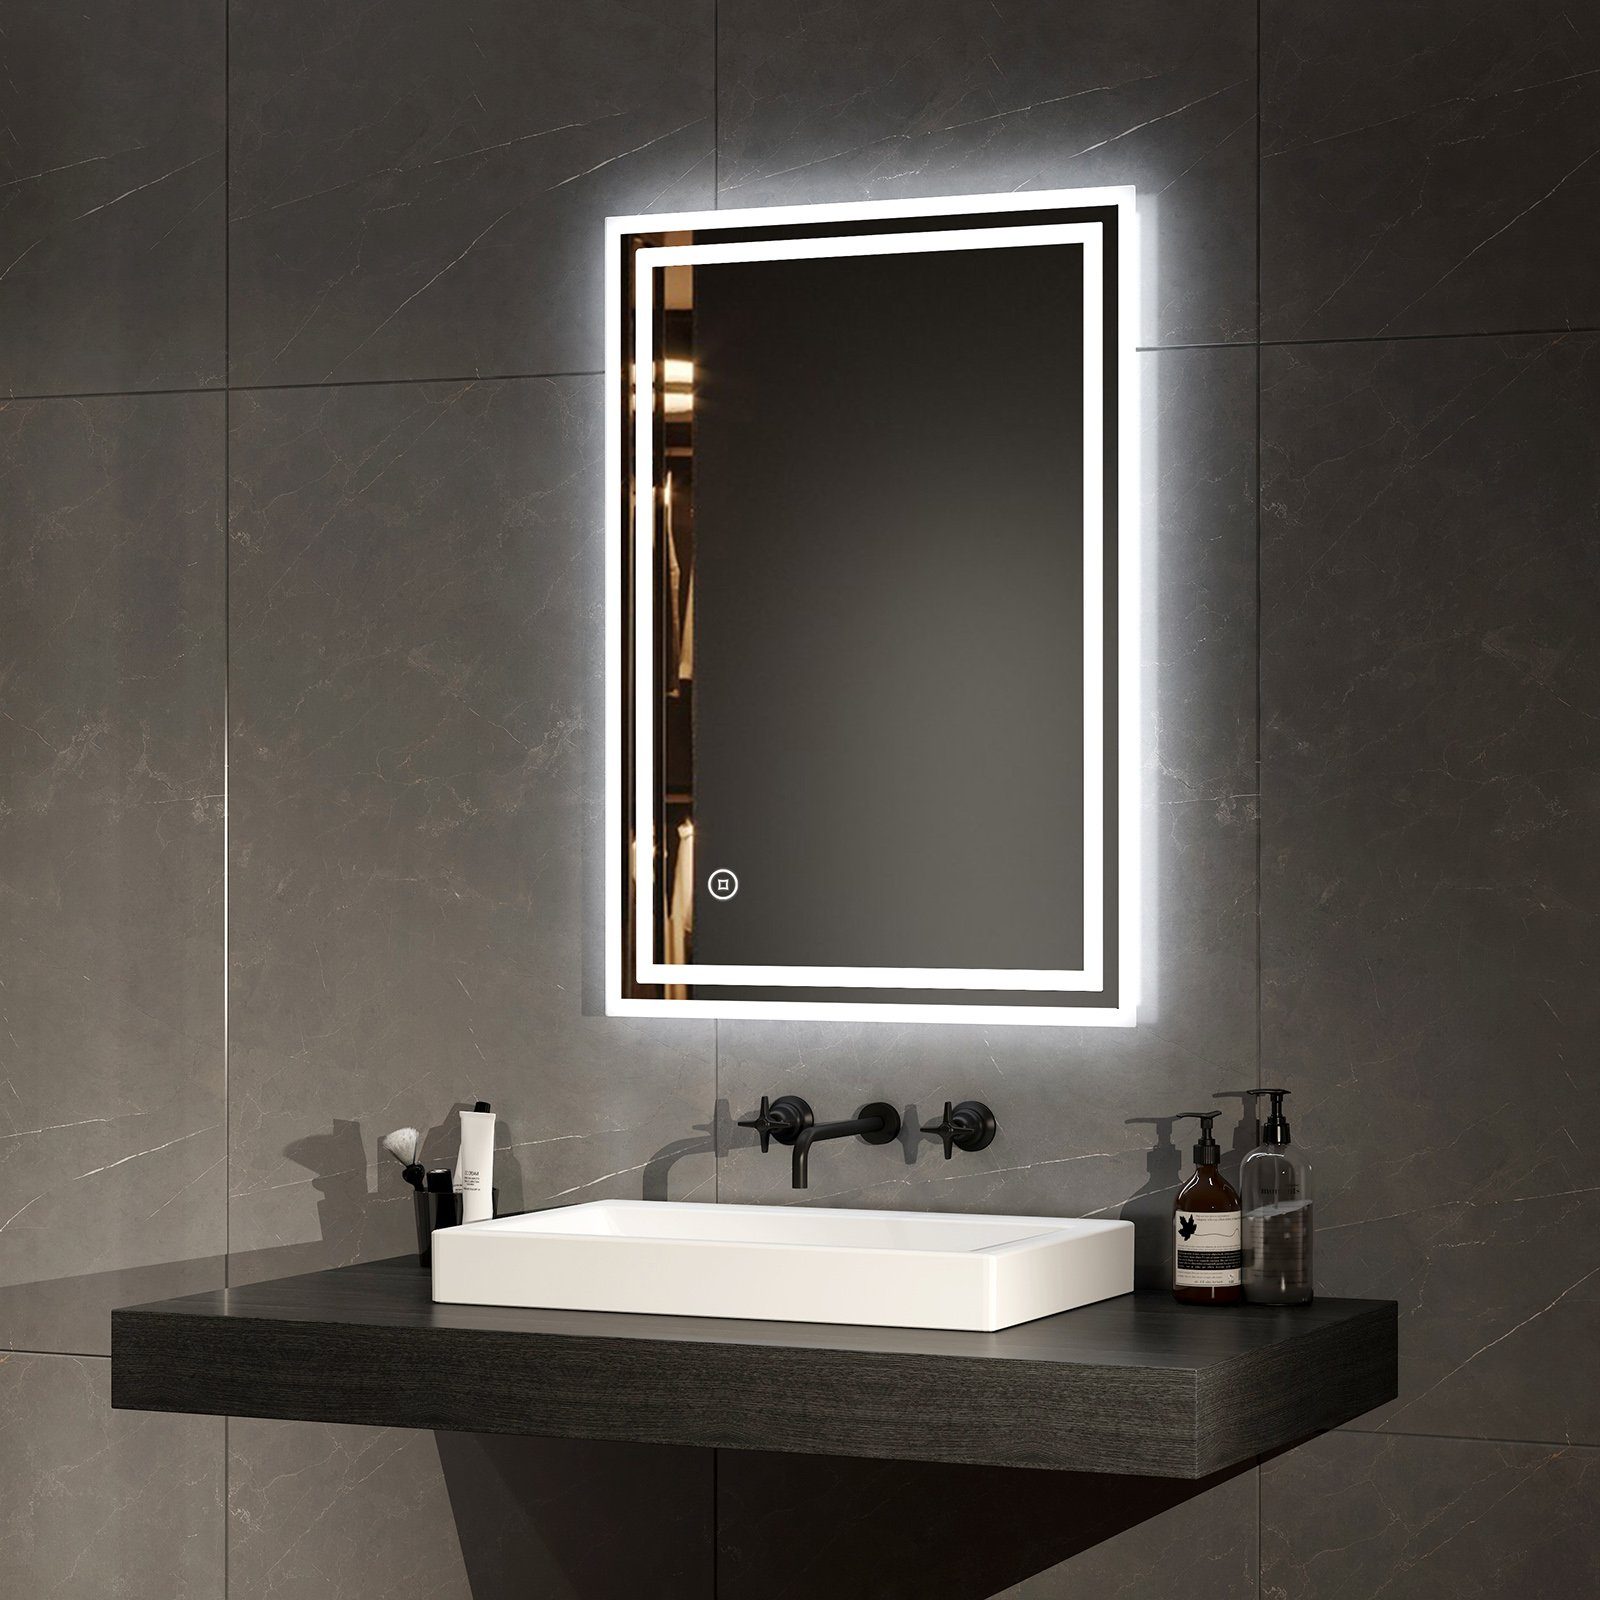 EMKE Badspiegel LED Badezimmerspiegel mit Beleuchtung Lichtspiegel IP44 (Modell 4, Touch-schalter), Kaltweißlicht Beschlagfrei Helligkeit einstellbar Memory Funktion